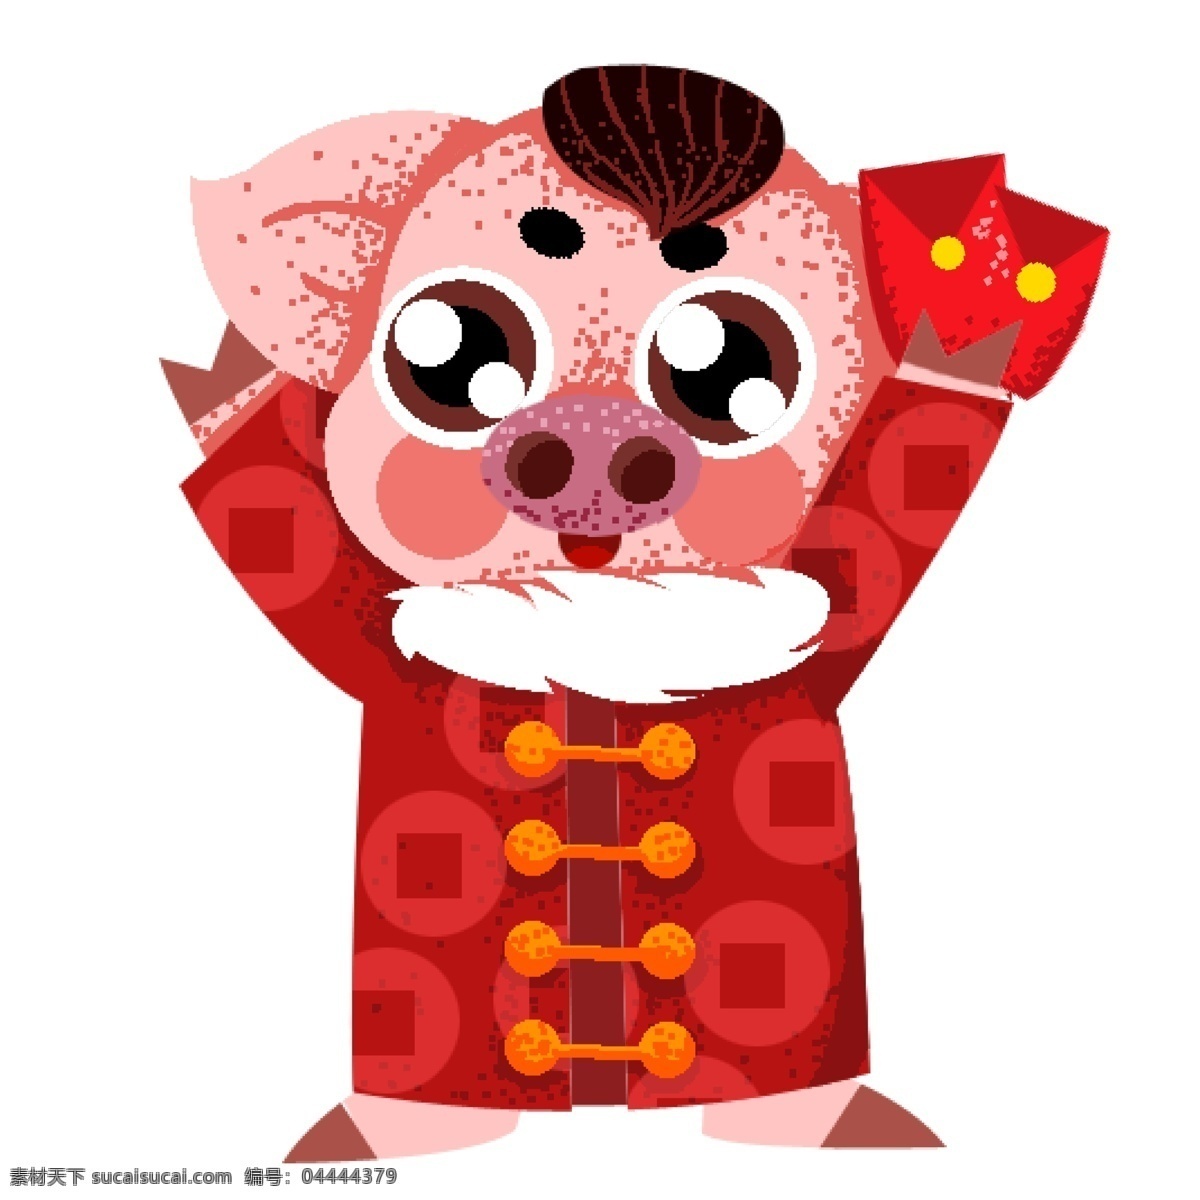 中国 风 复古 像素 化 送 红包 猪 卡通 中国风 传统文化 插画 春节 喜庆 像素化 唐装 送红包 猪年形象 小猪造型 2019年 猪年 手绘 新年